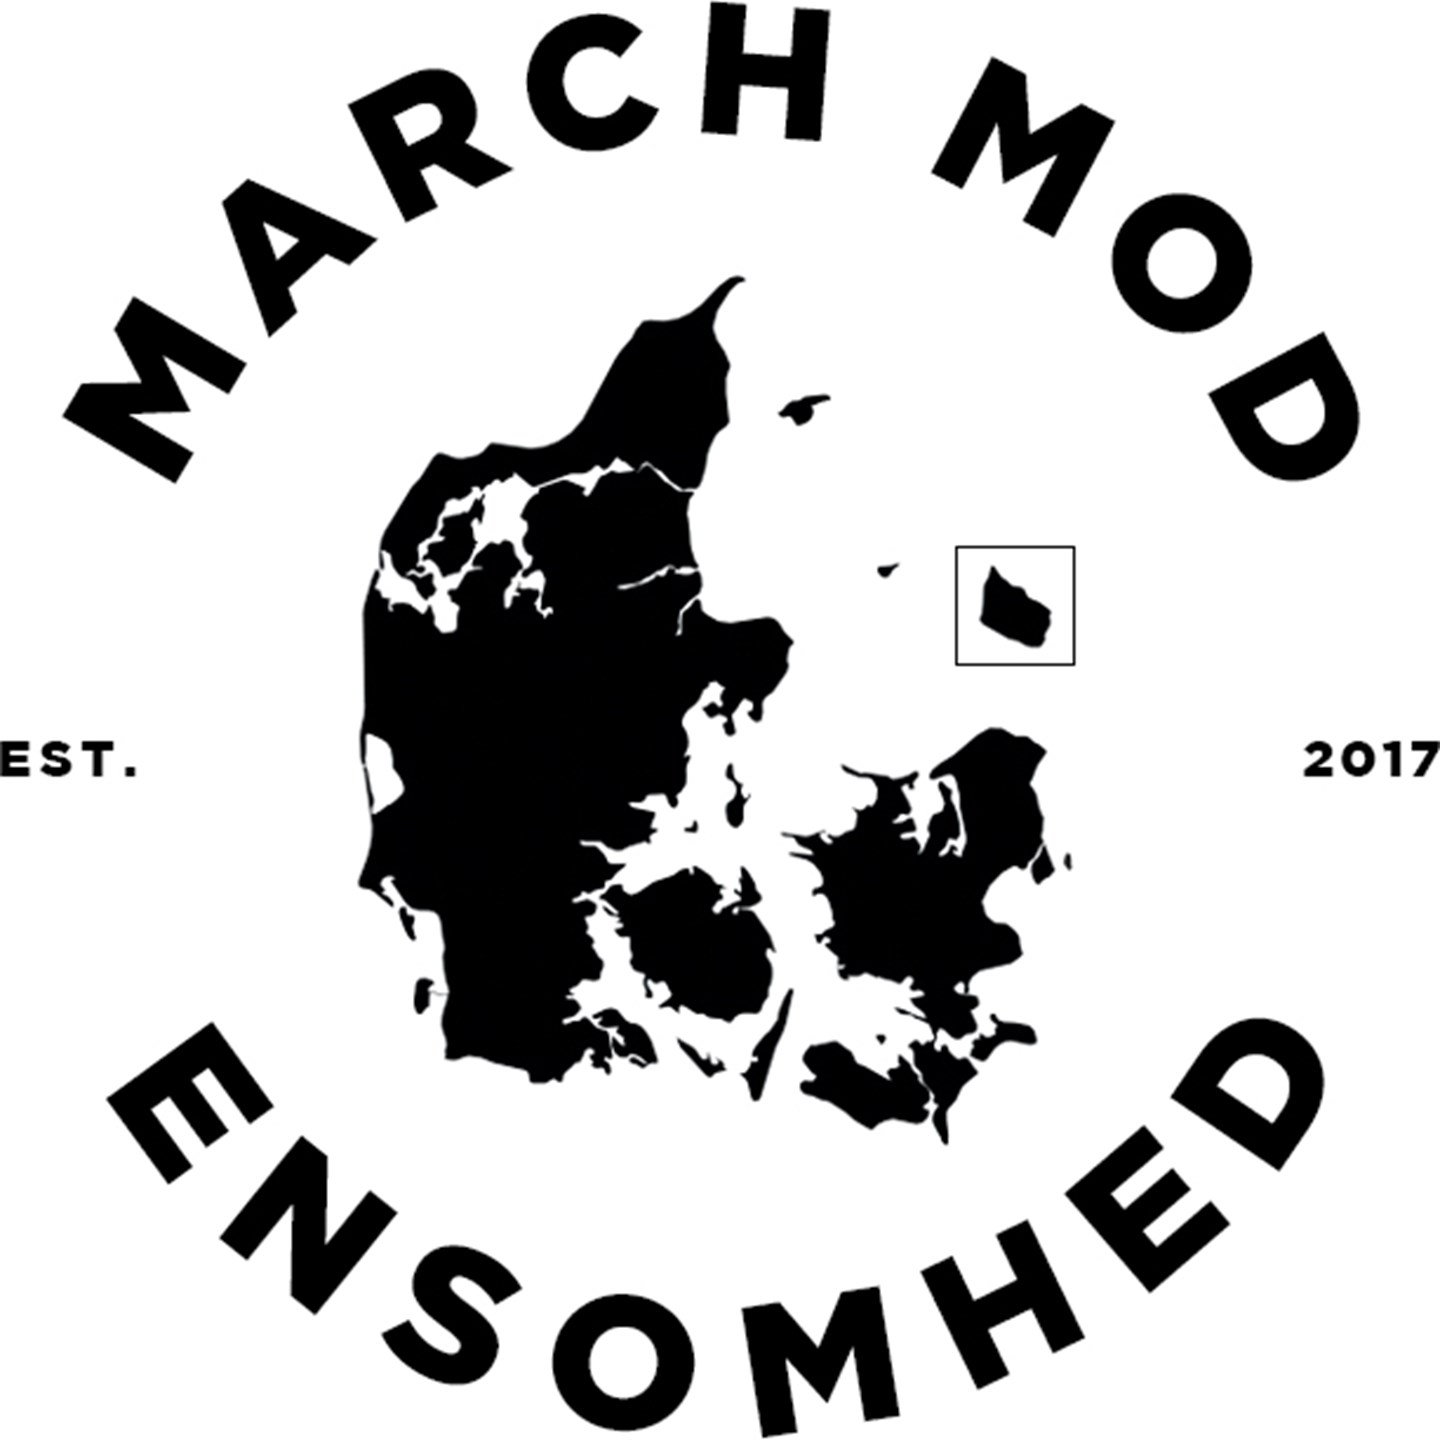 March mod ensomheds logo